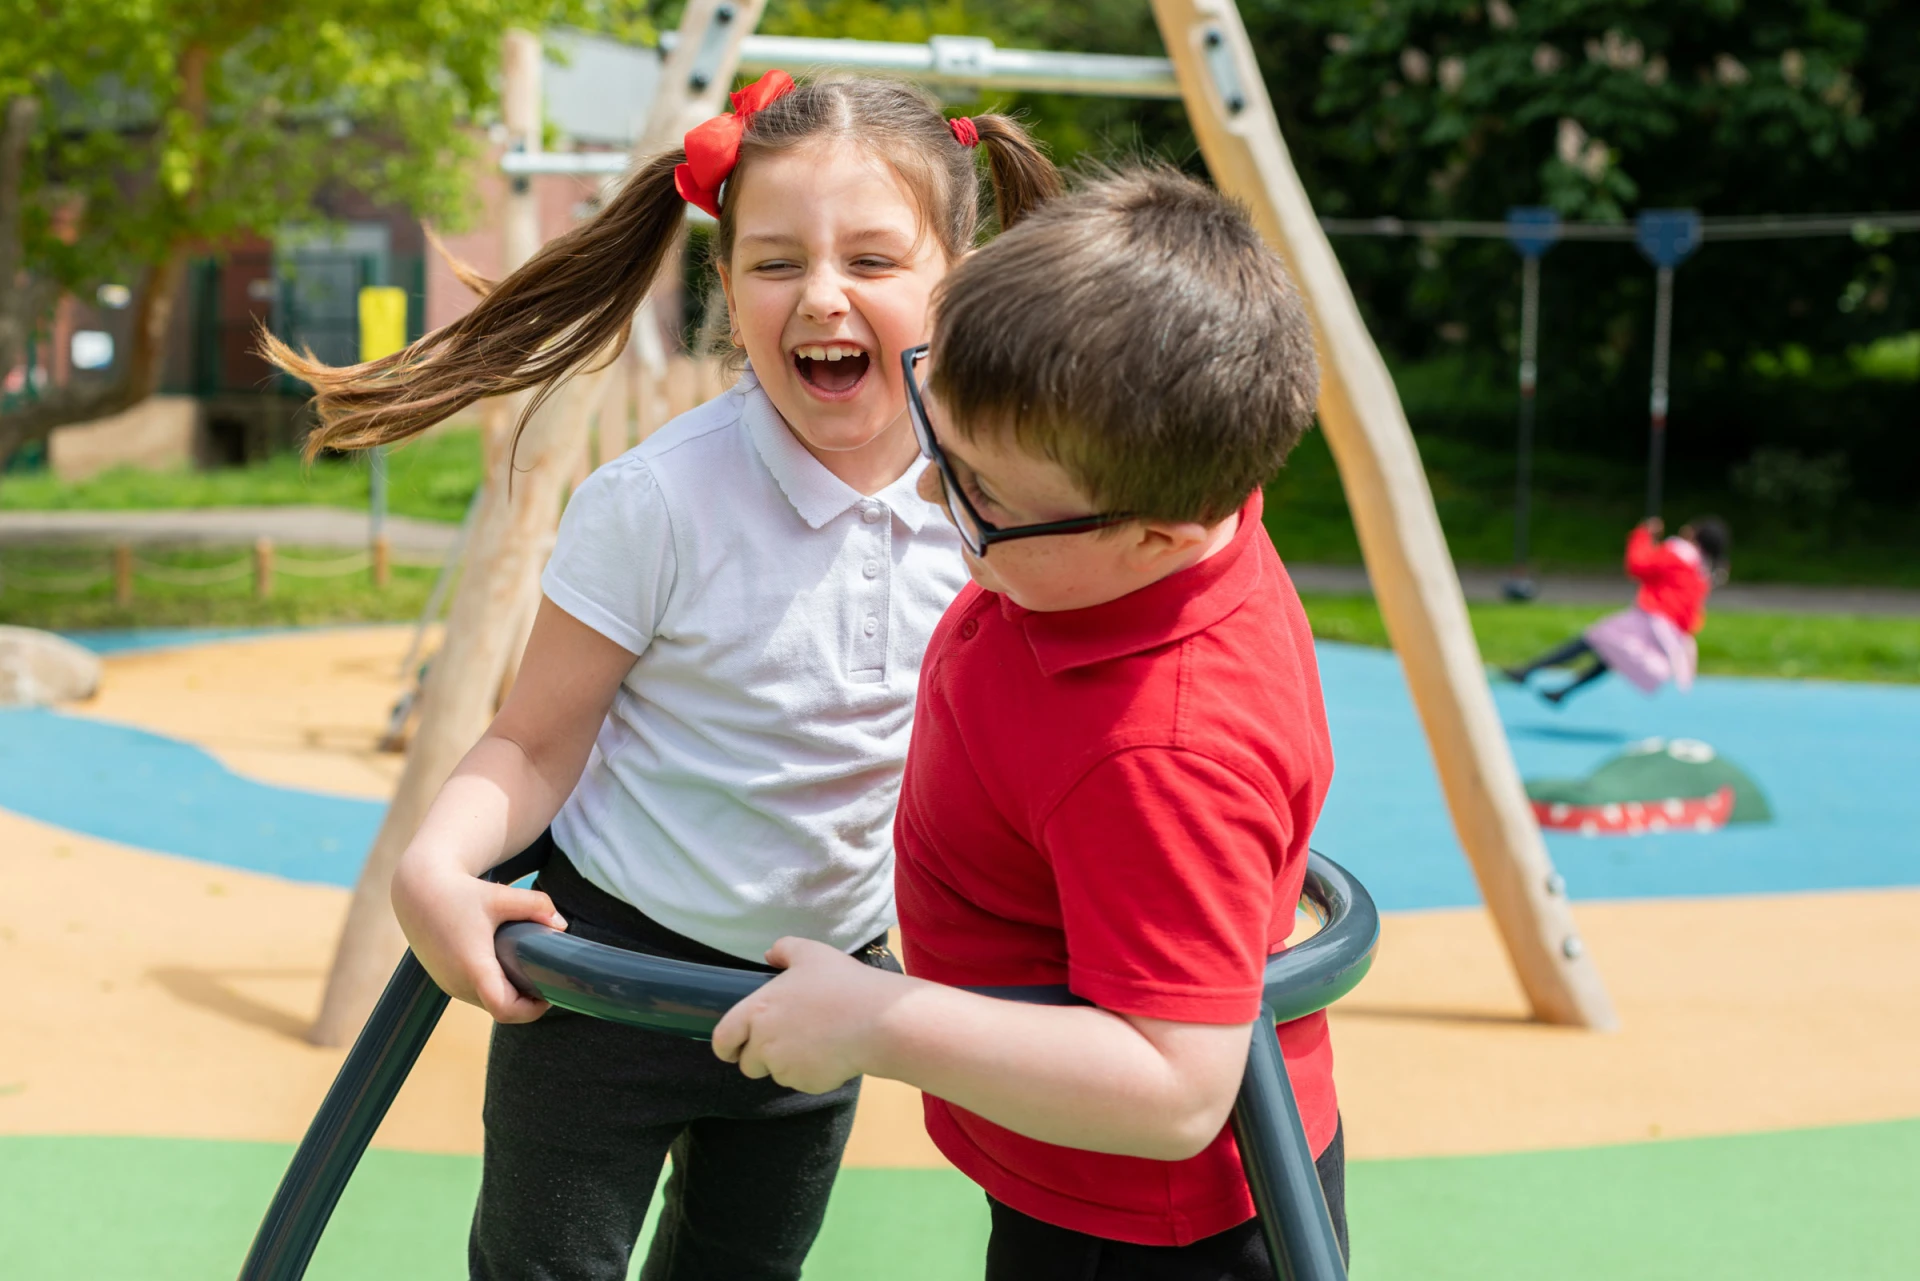 Un garçon et une fille jouant sur un carrousel dans une cour de récréation